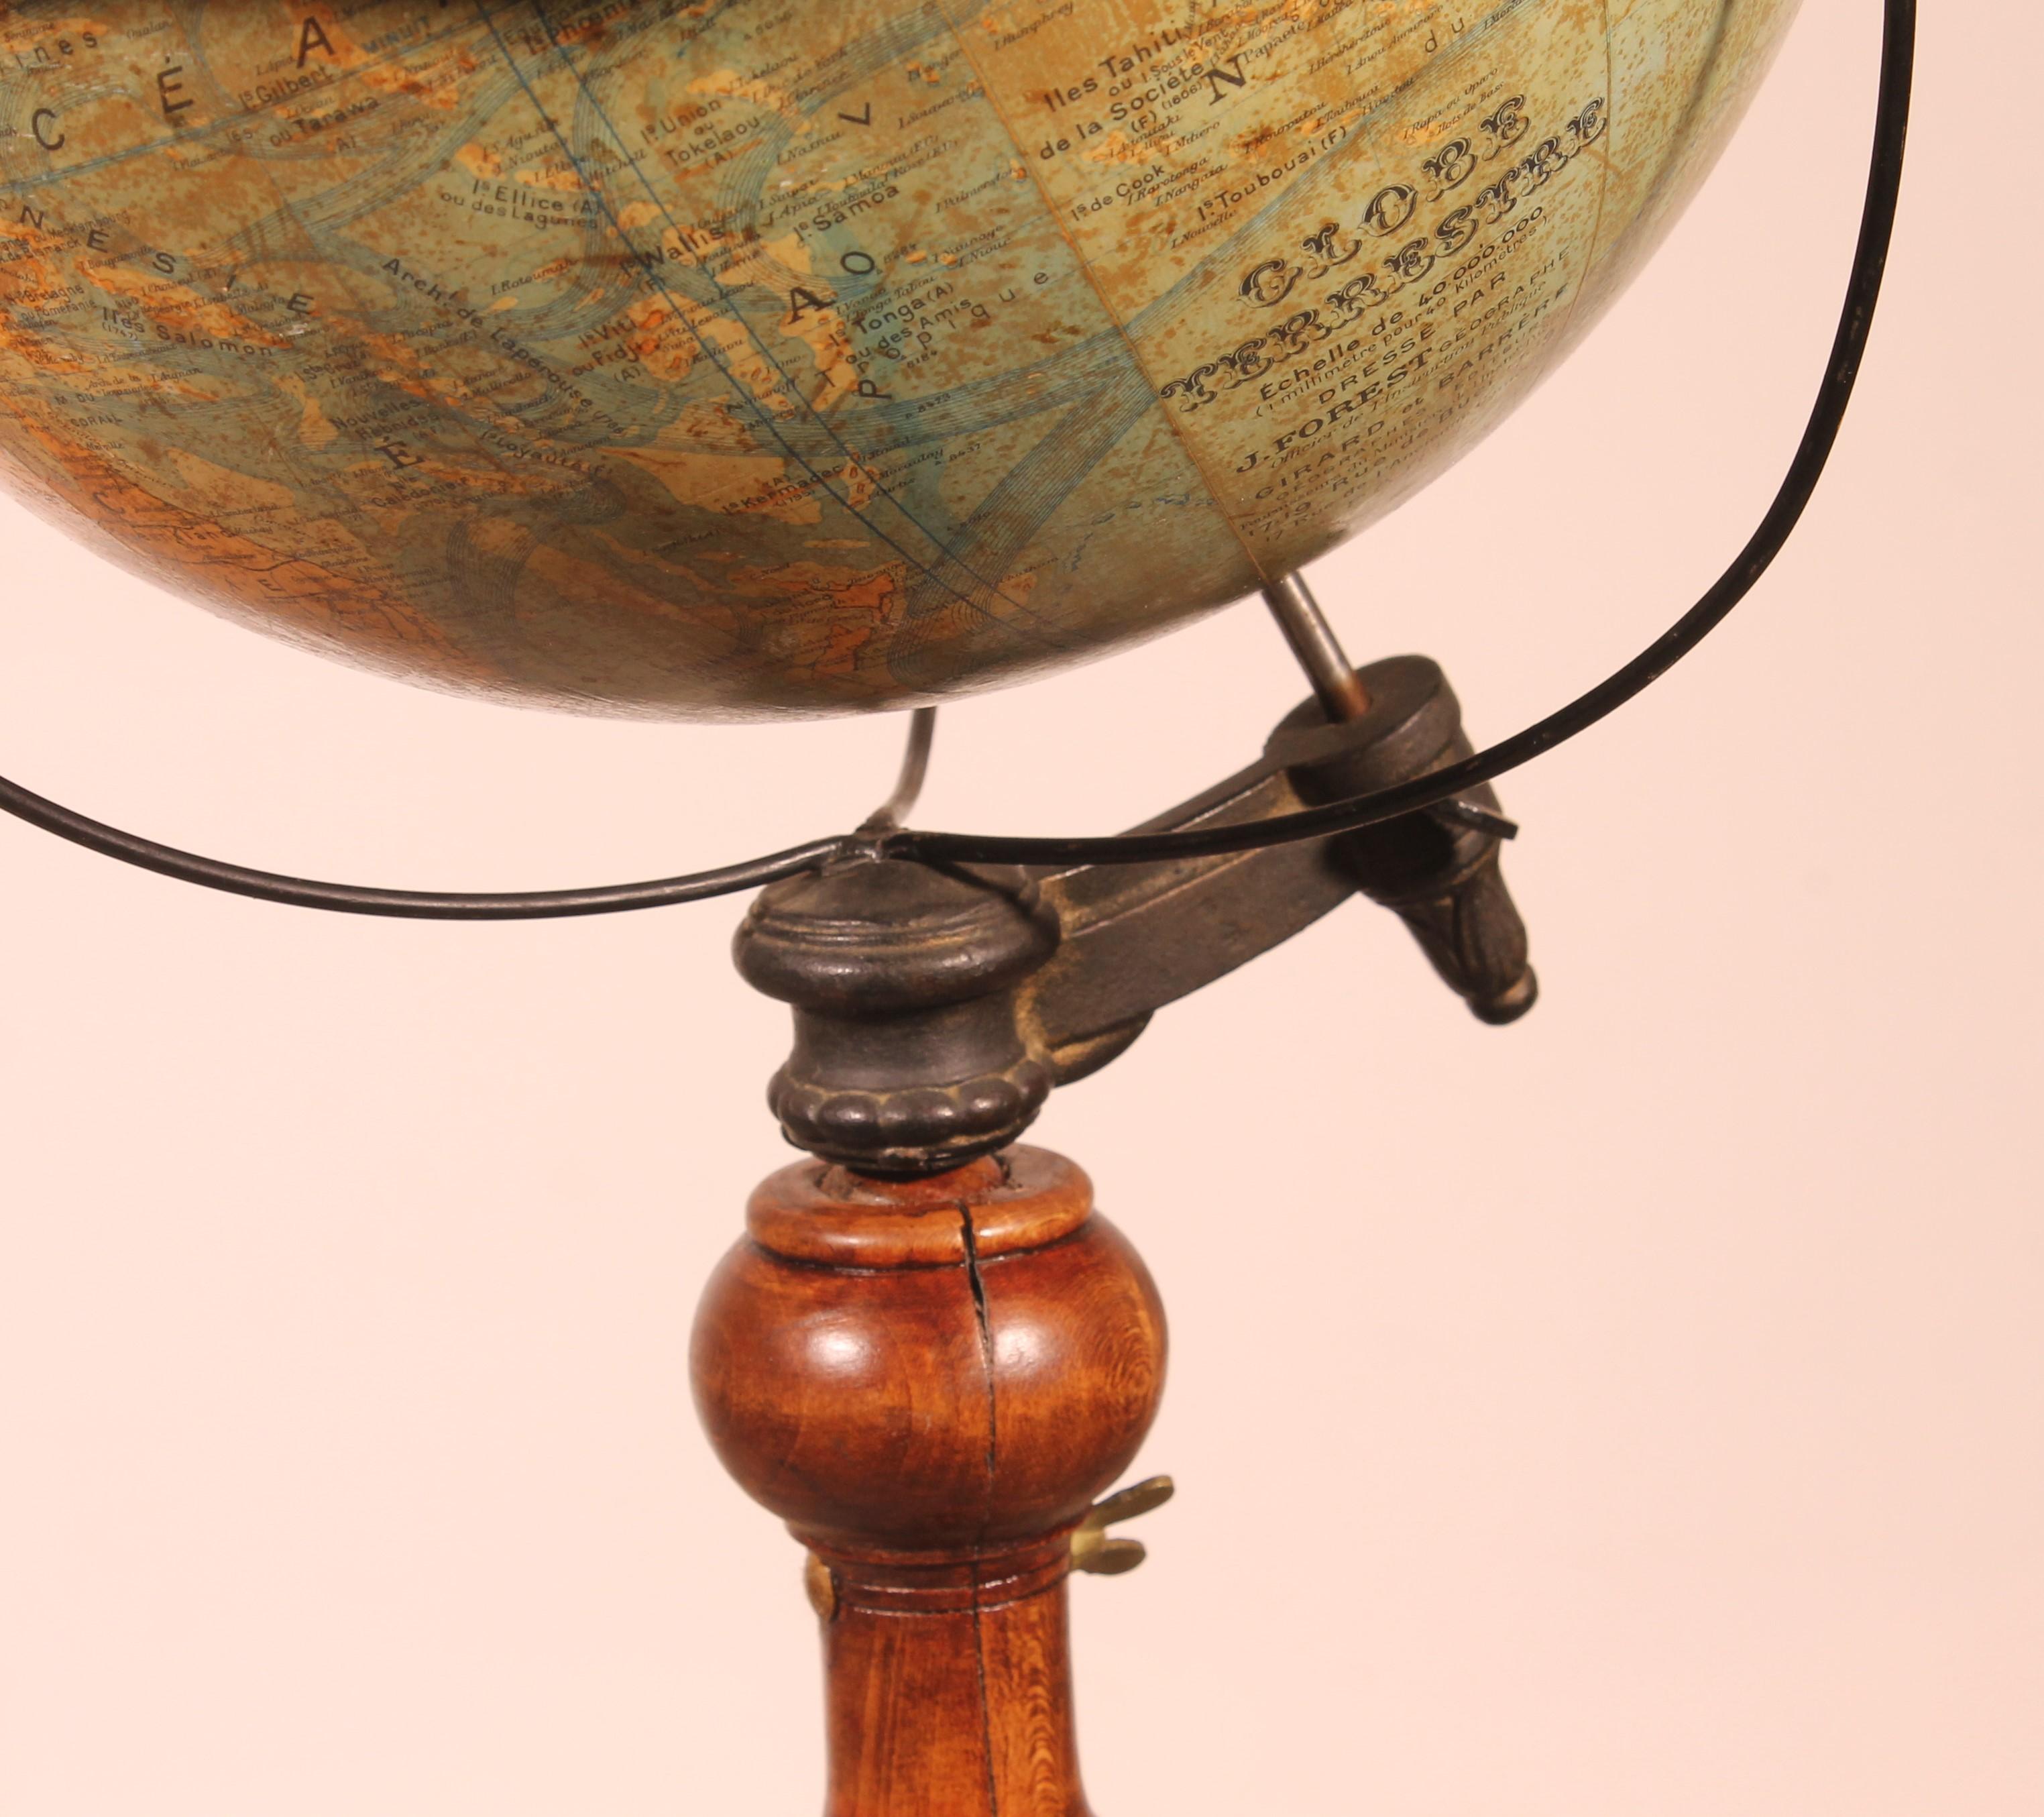 Sehr schöner Bibliotheksglobus von J.Forest Paris rue de Buci aus dem 19.

Globen auf Ständern sind am seltensten. Dieses Exemplar von J. Forest, einem berühmten Pariser Verlagshaus aus dem 19. Jahrhundert, hat einen sehr schönen gedrechselten